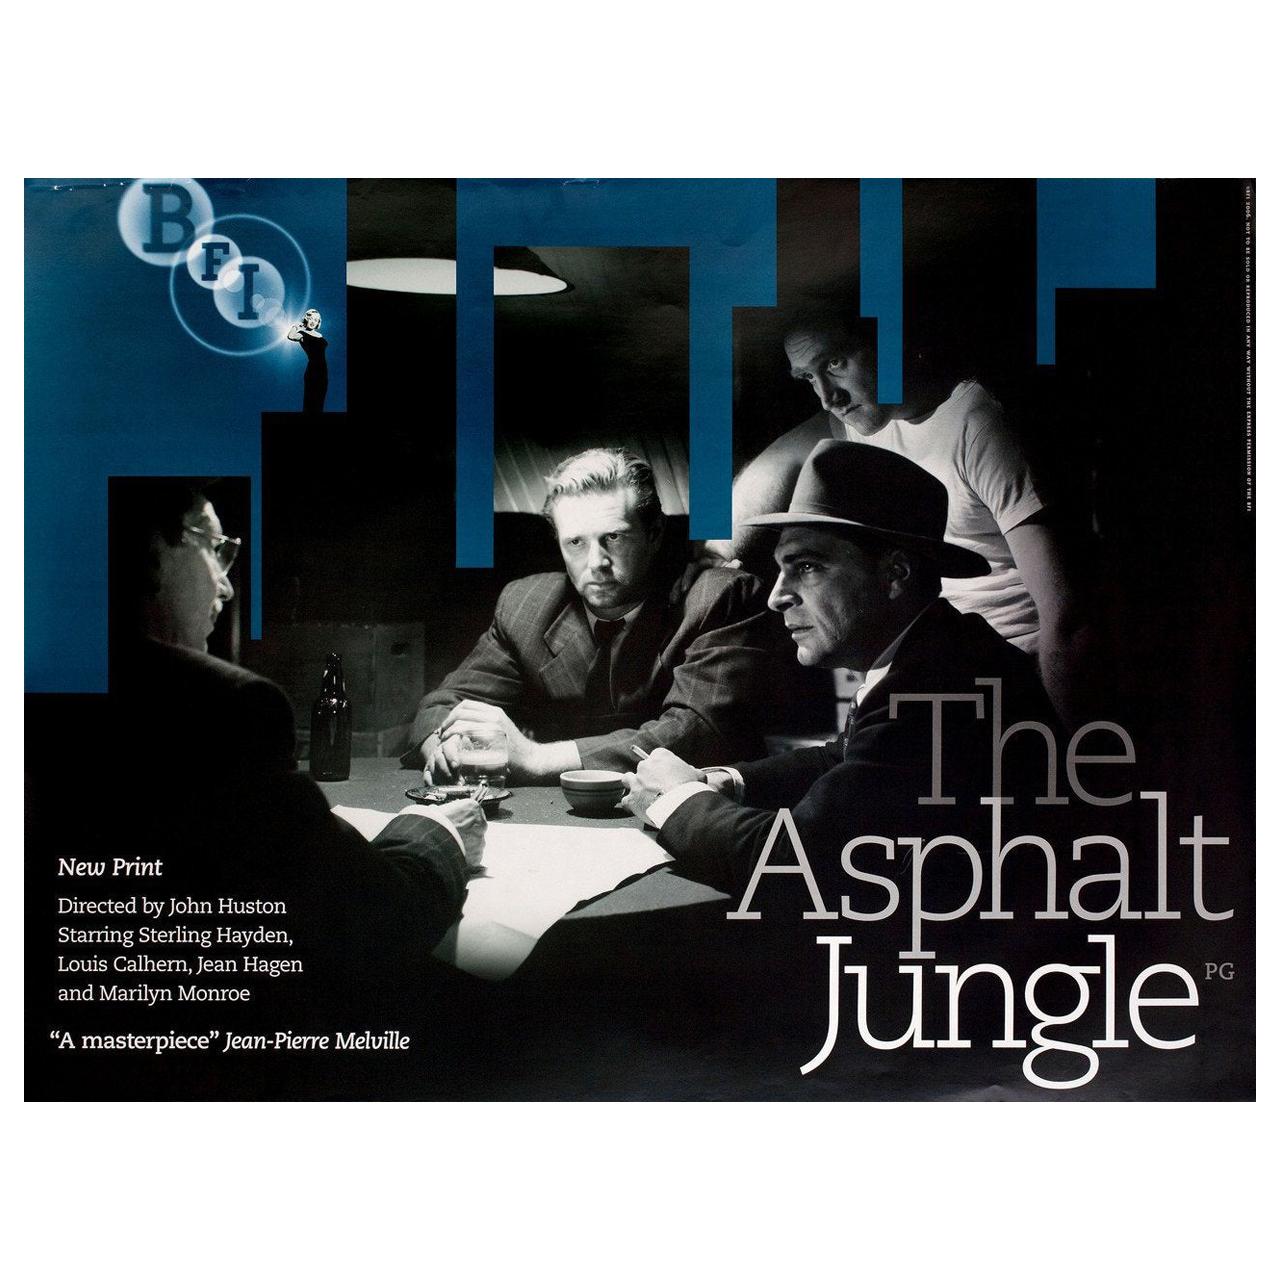 "The Asphalt Jungle" R2006 British Quad Film Poster